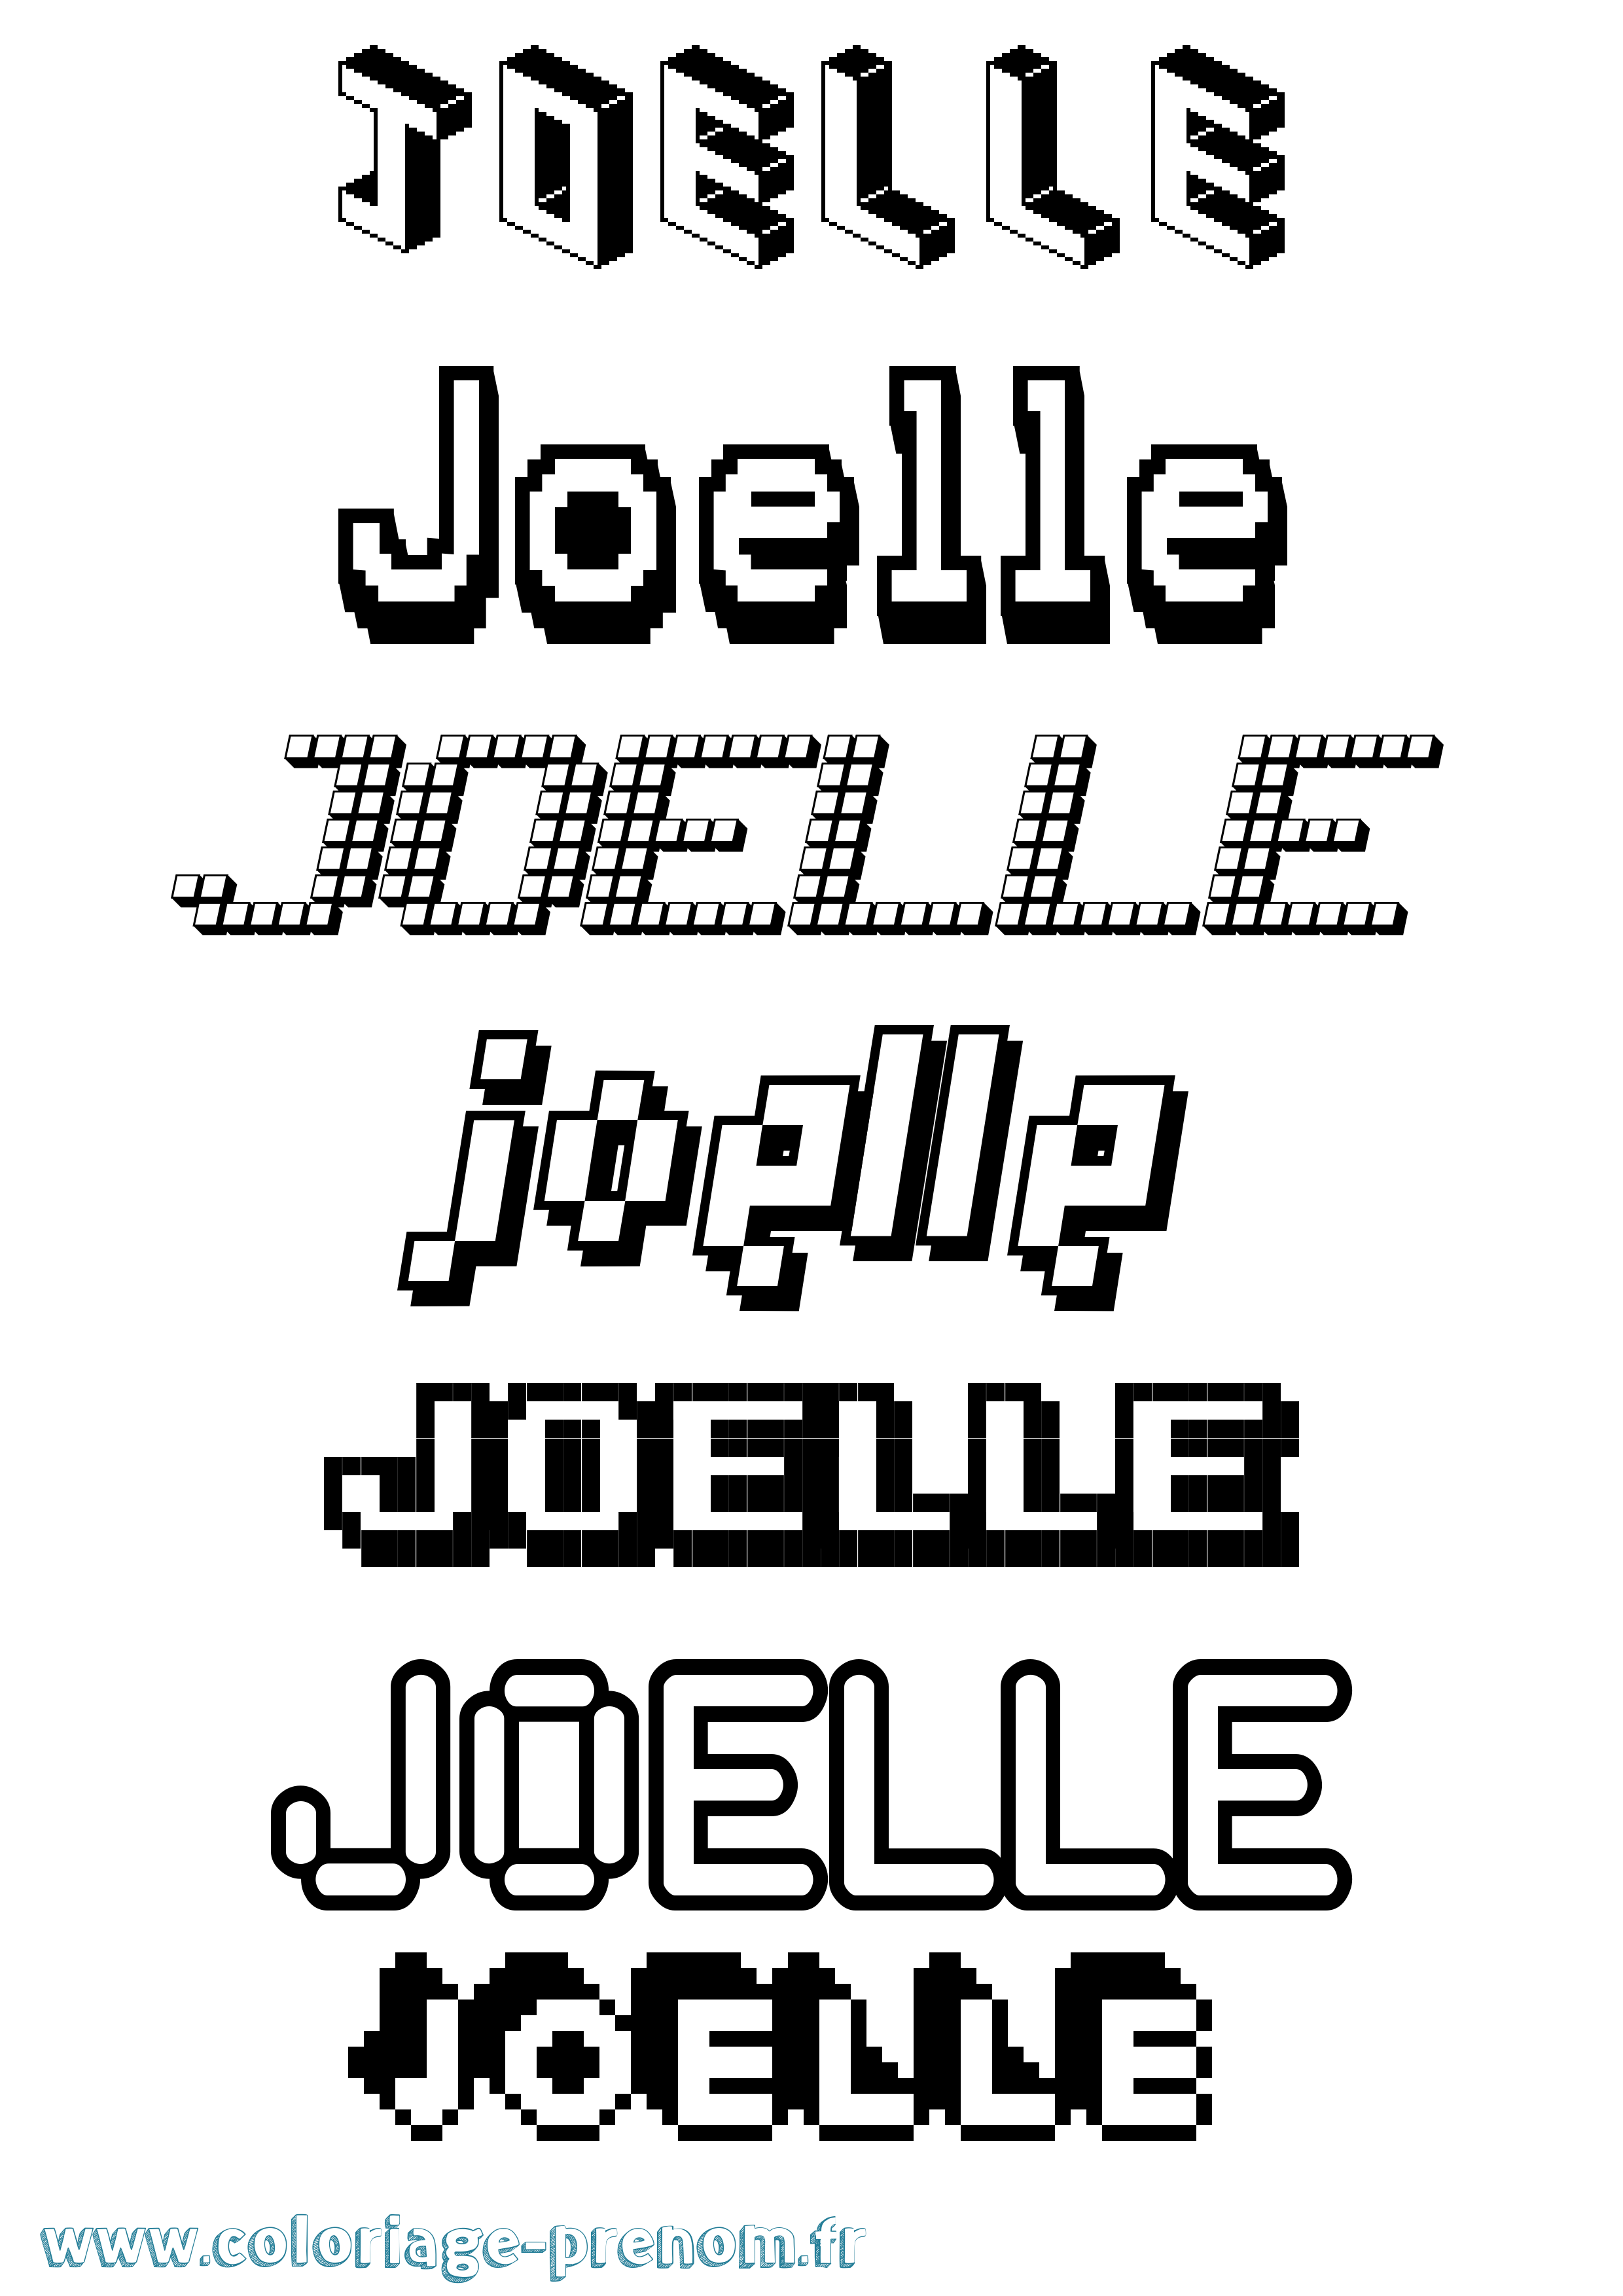 Coloriage prénom Joelle Pixel